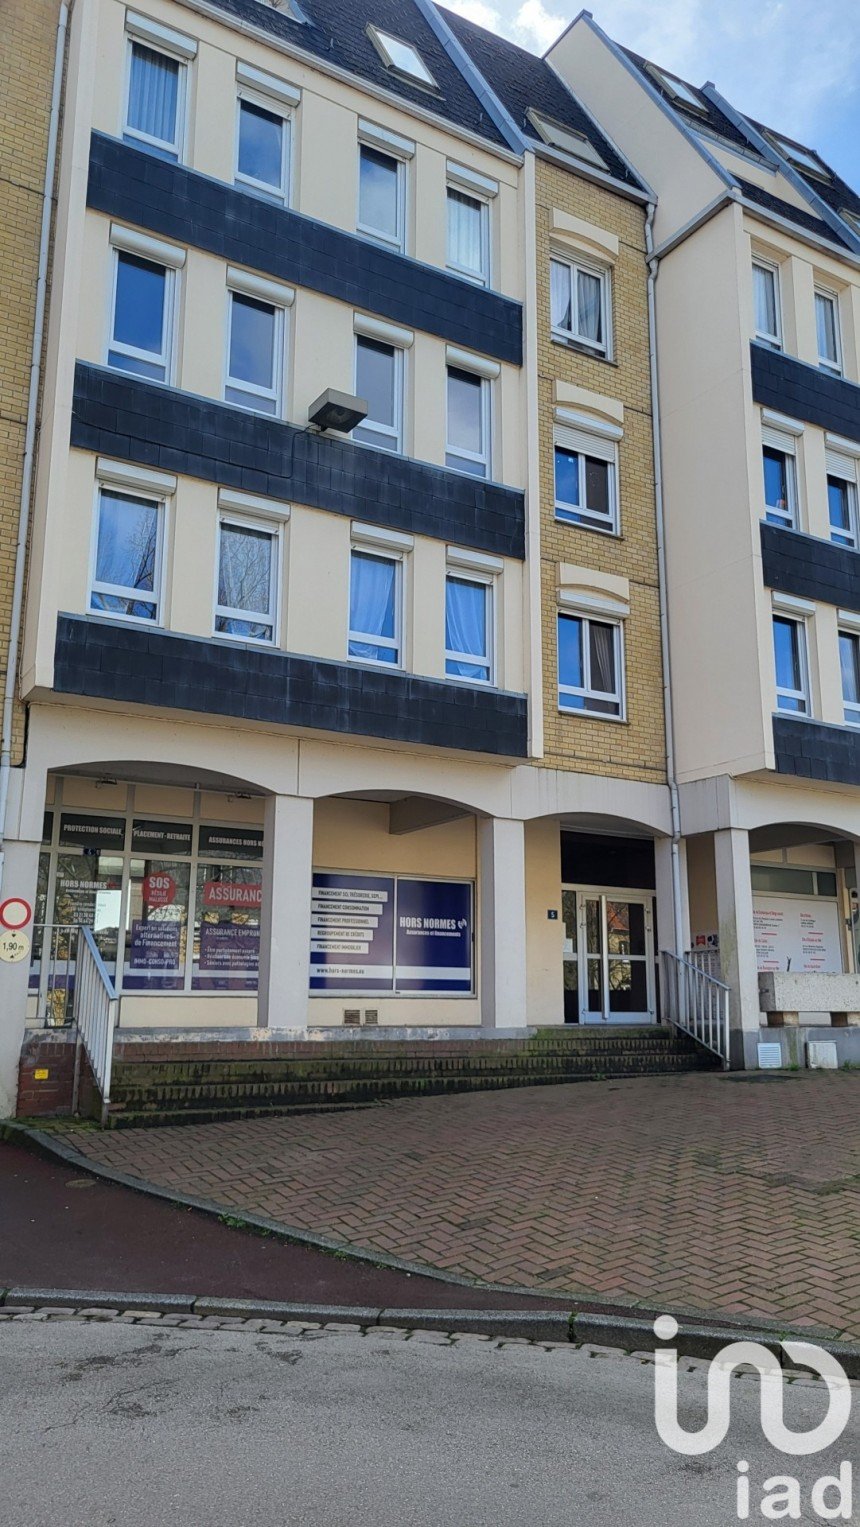 Vente Appartement 87m² 4 Pièces à Saint-Omer (62500) - Iad France